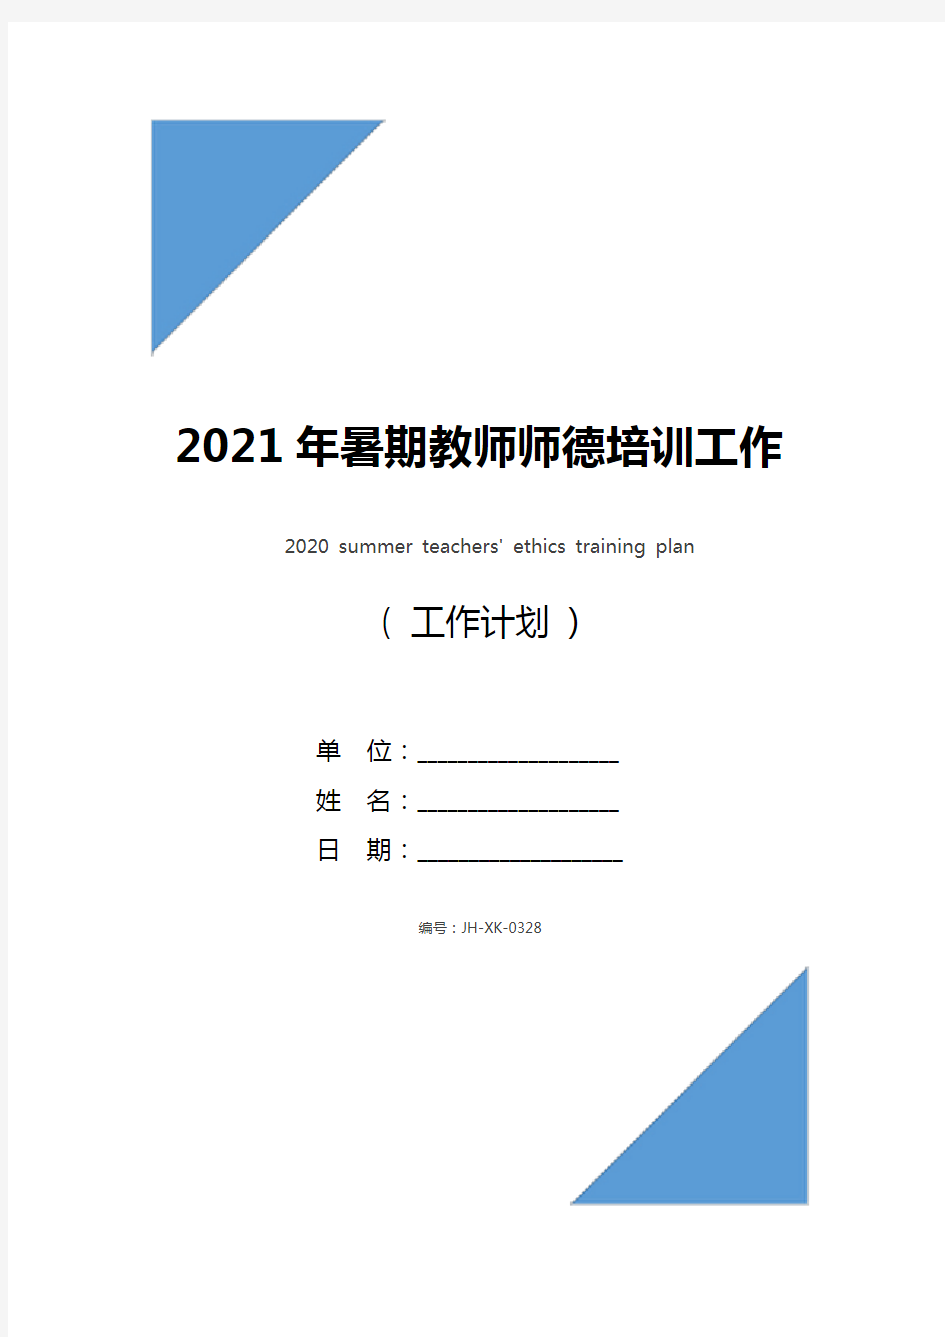 2021年暑期教师师德培训工作计划(通用版)